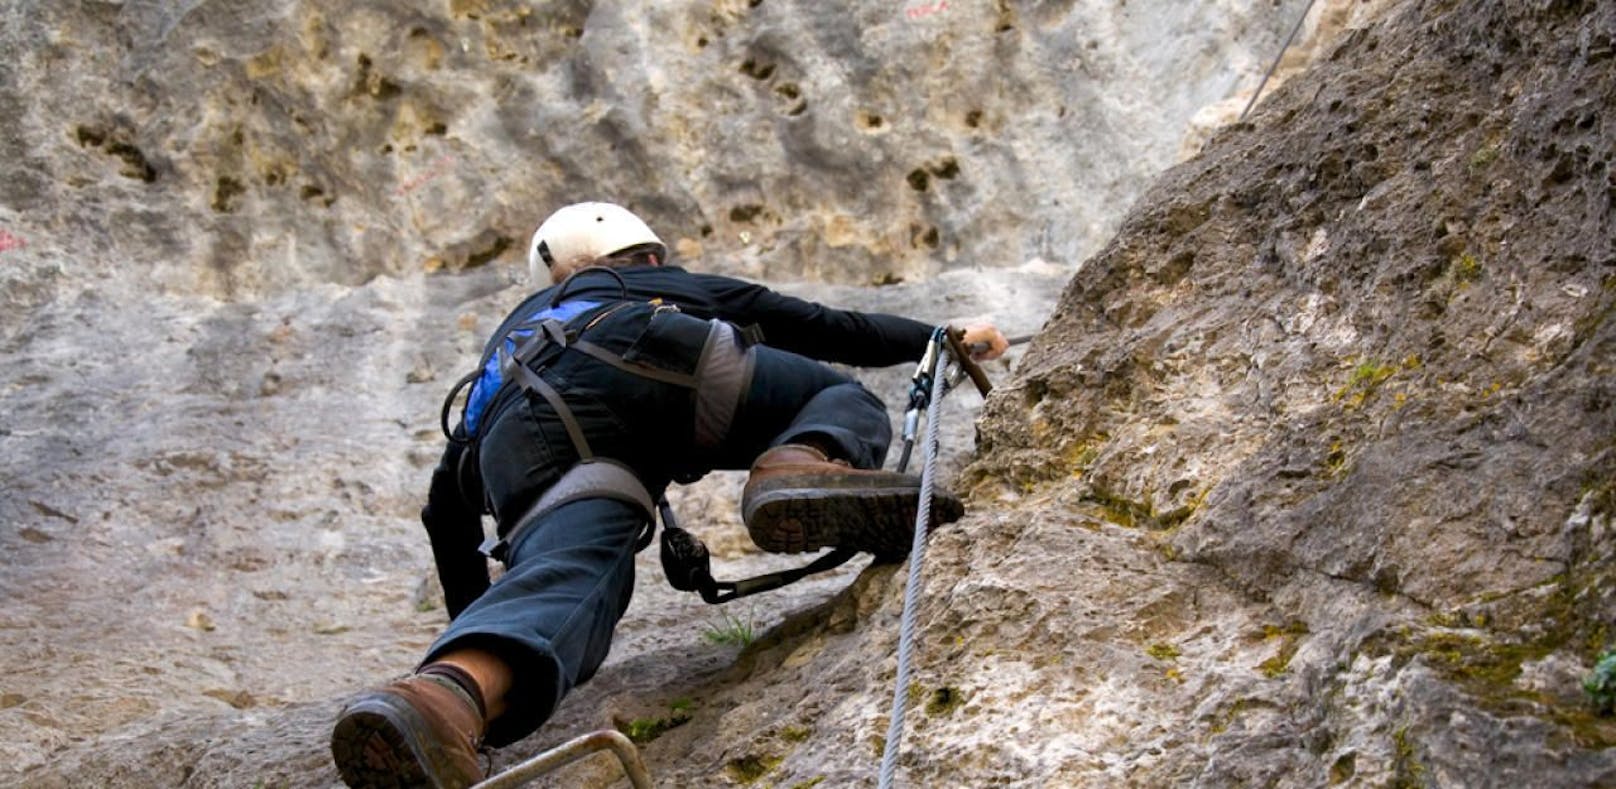 Wegen Höhenangst: Linzer aus Klettersteig gerettet